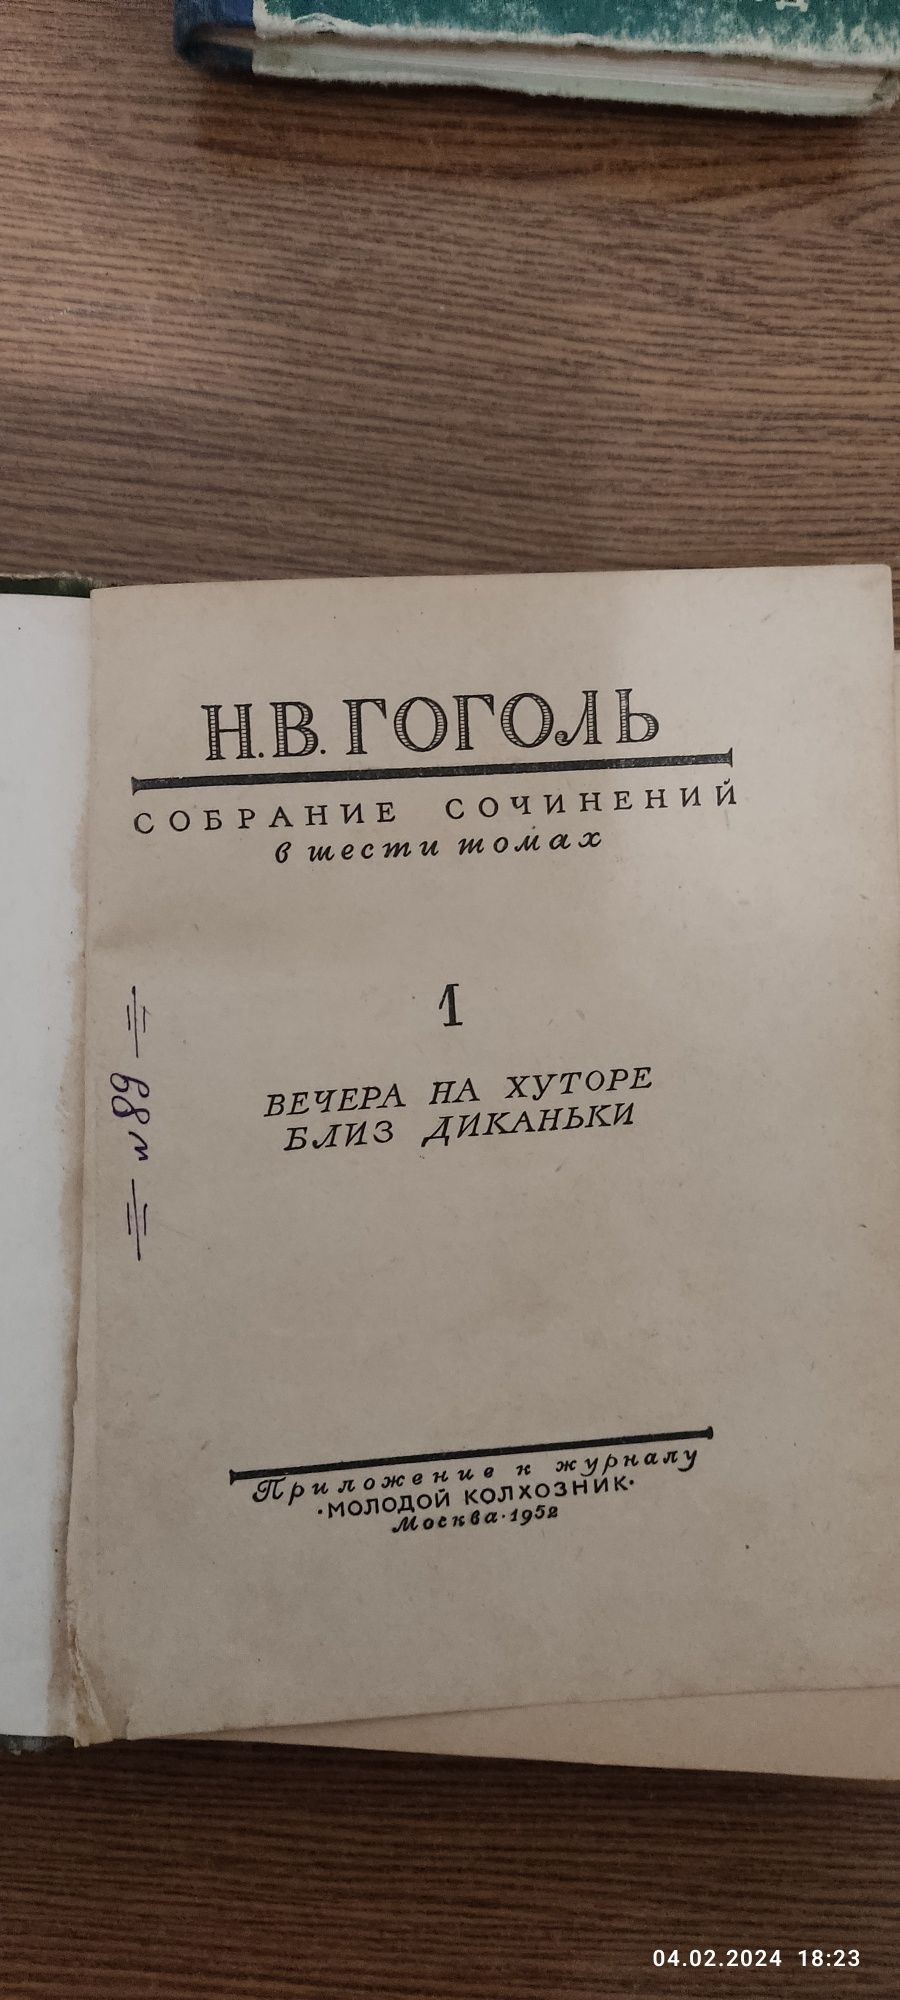 Книга 1том збірки Гоголя,,Вечори на хуторі близ Диканьки,, 1952 рік.